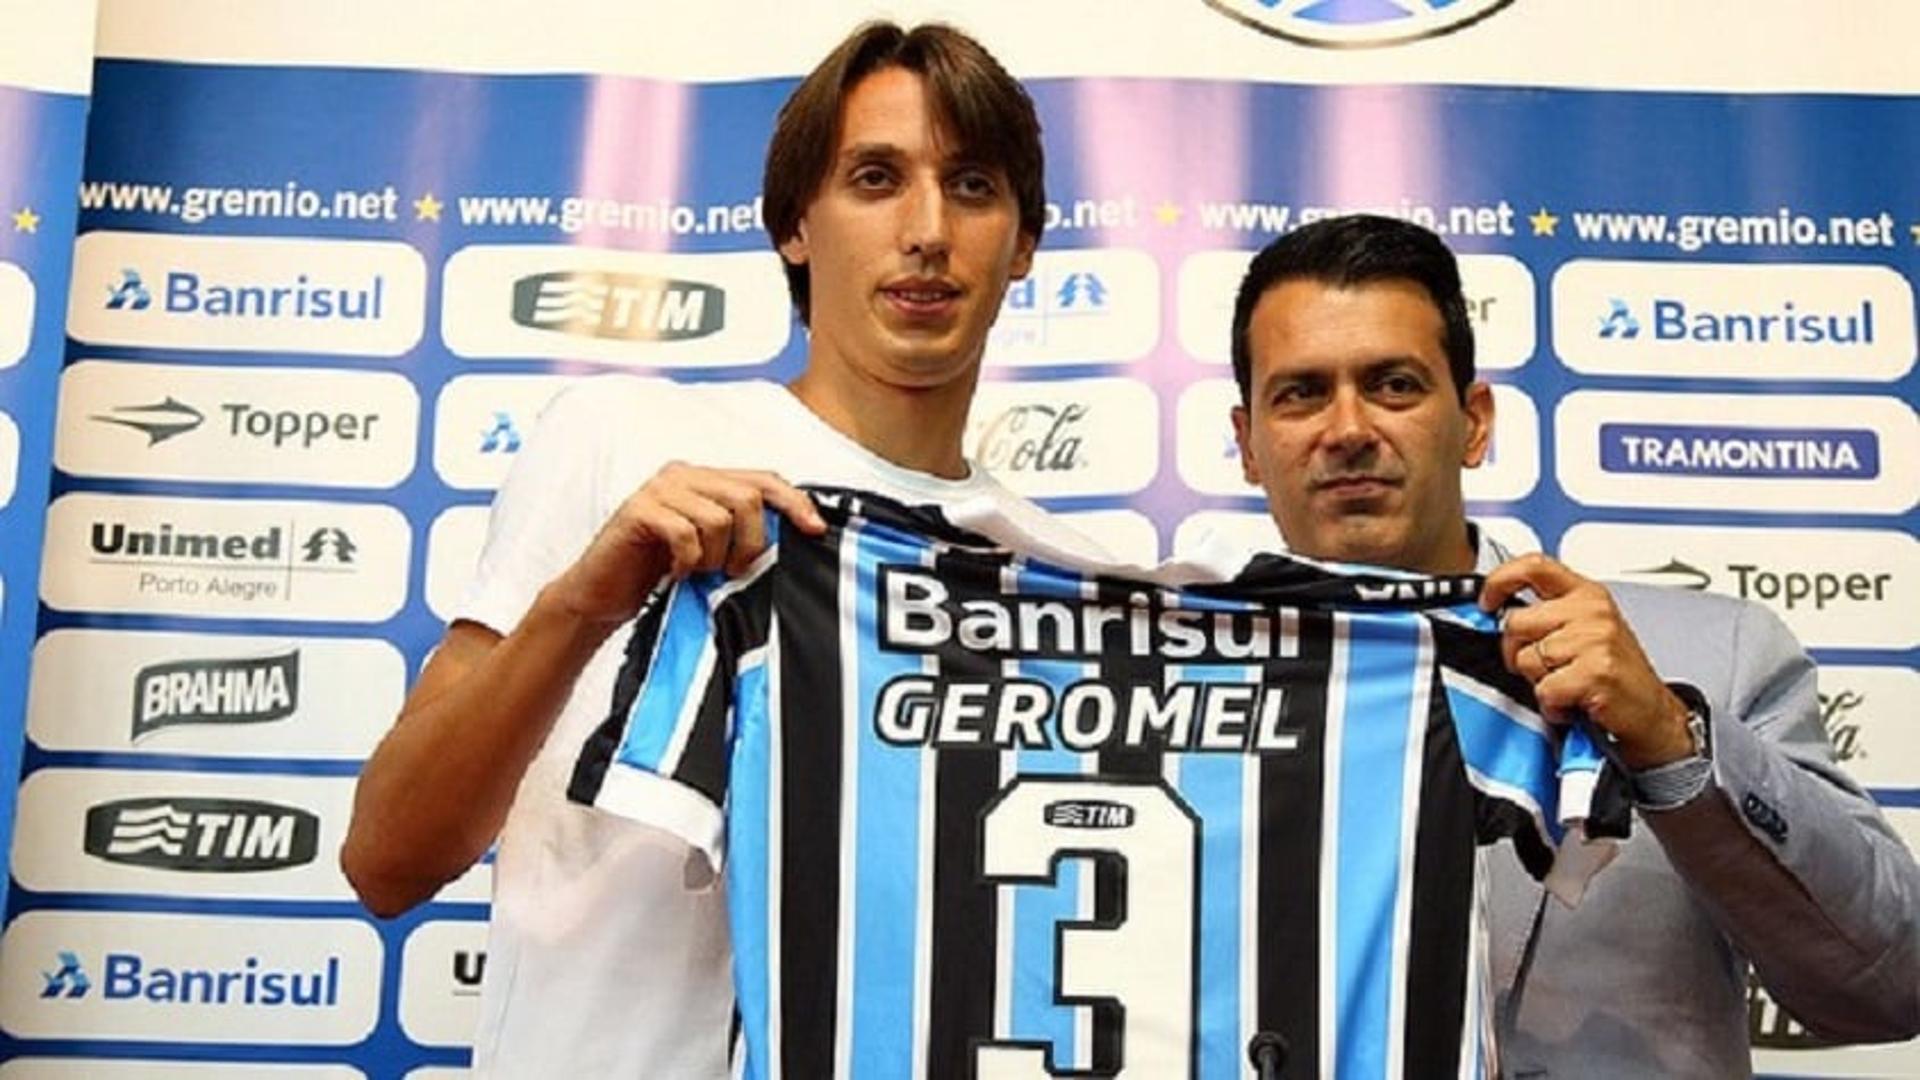 Geromel - Grêmio